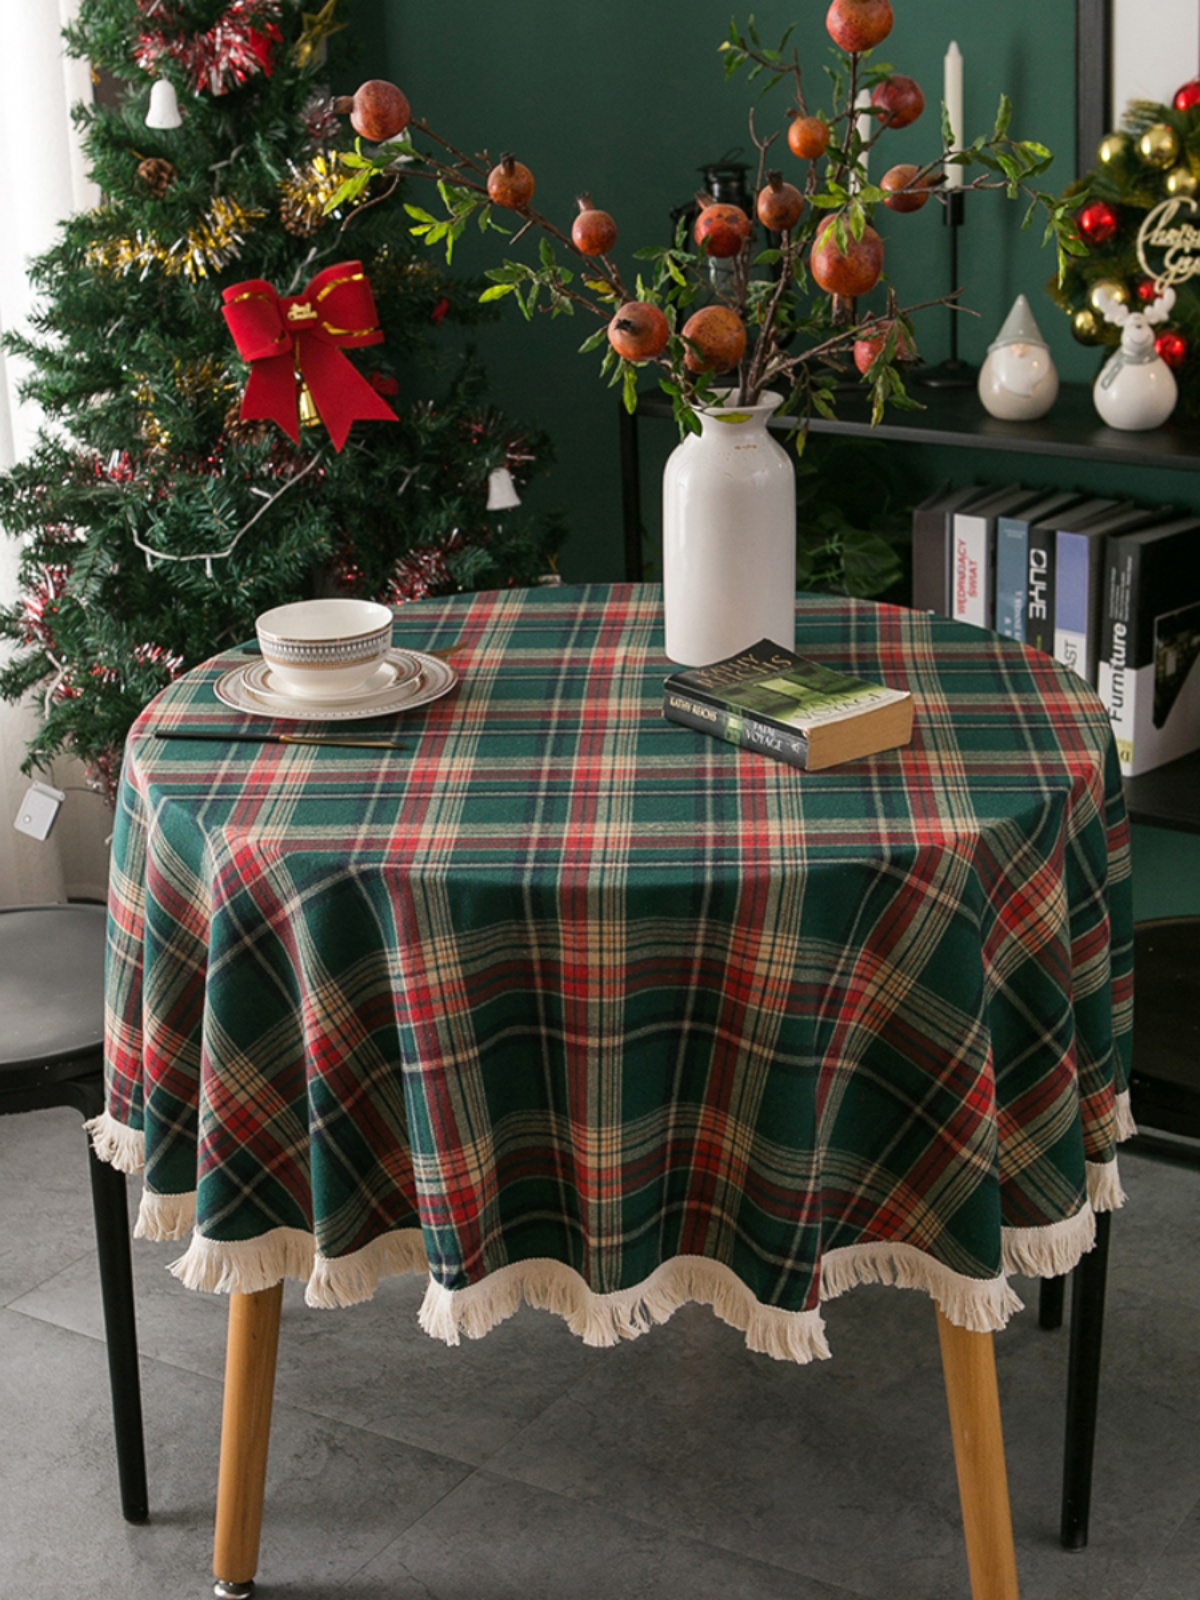 聖誕節紅綠格子流蘇圓桌布 北歐圓形餐桌蓋巾